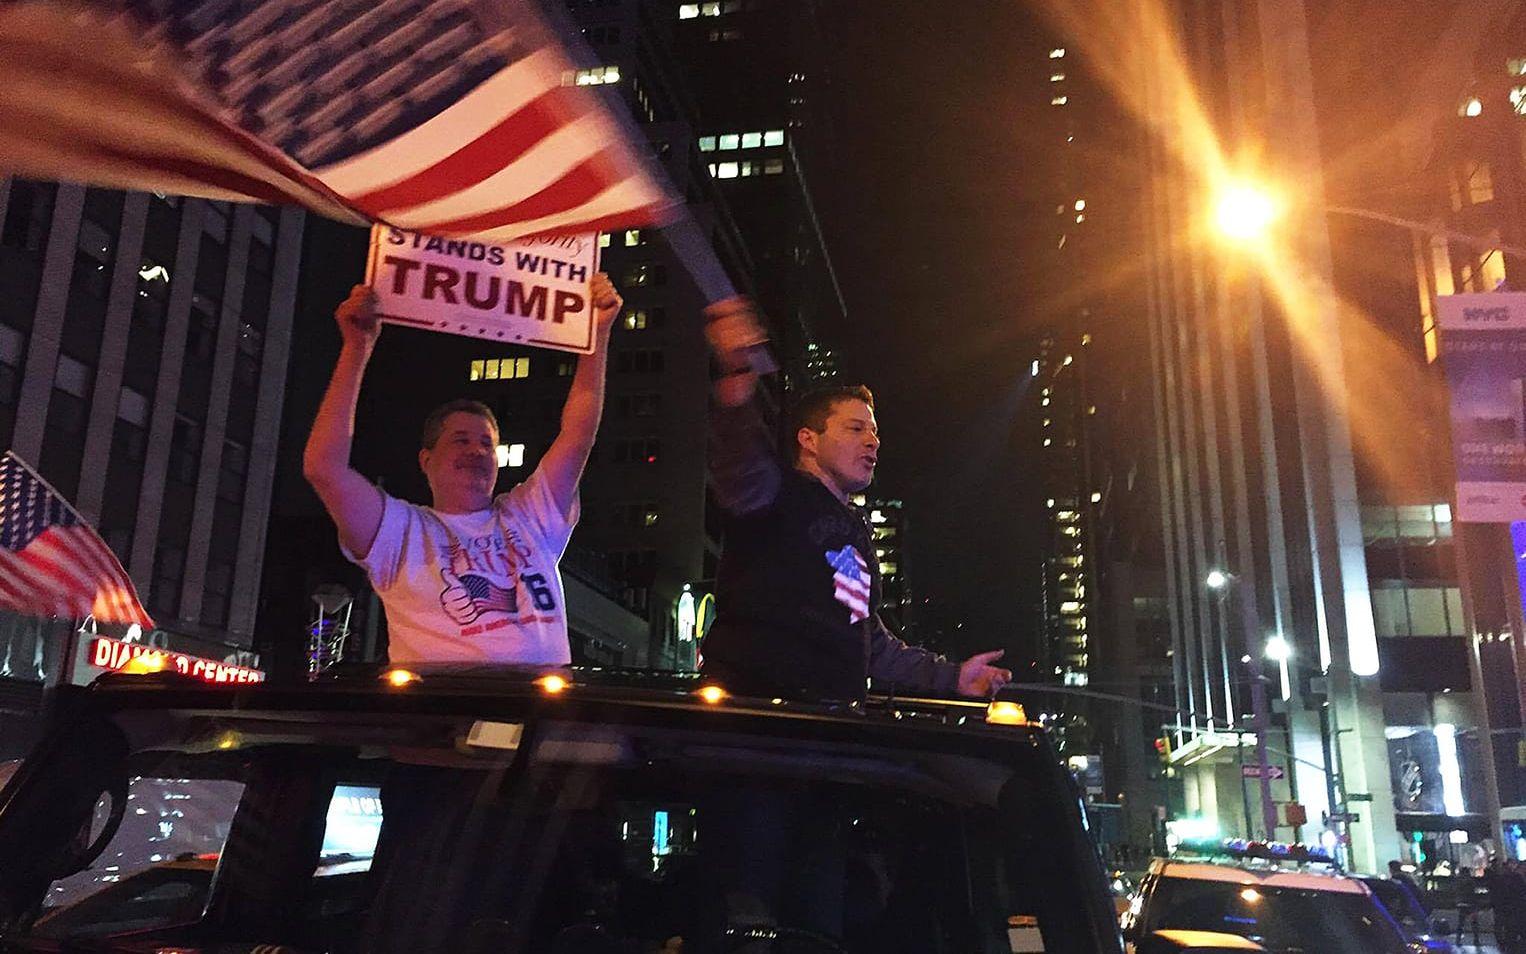 Tony latona viftar med en flagga och skriker "vi har vunnit, mainstream media försökte lura oss med sina falska opinionsundersökningar, men inget kubde stoppa oss Donald Trump will make America great again!" FOTO: ANDERS ABRAHAMSSON